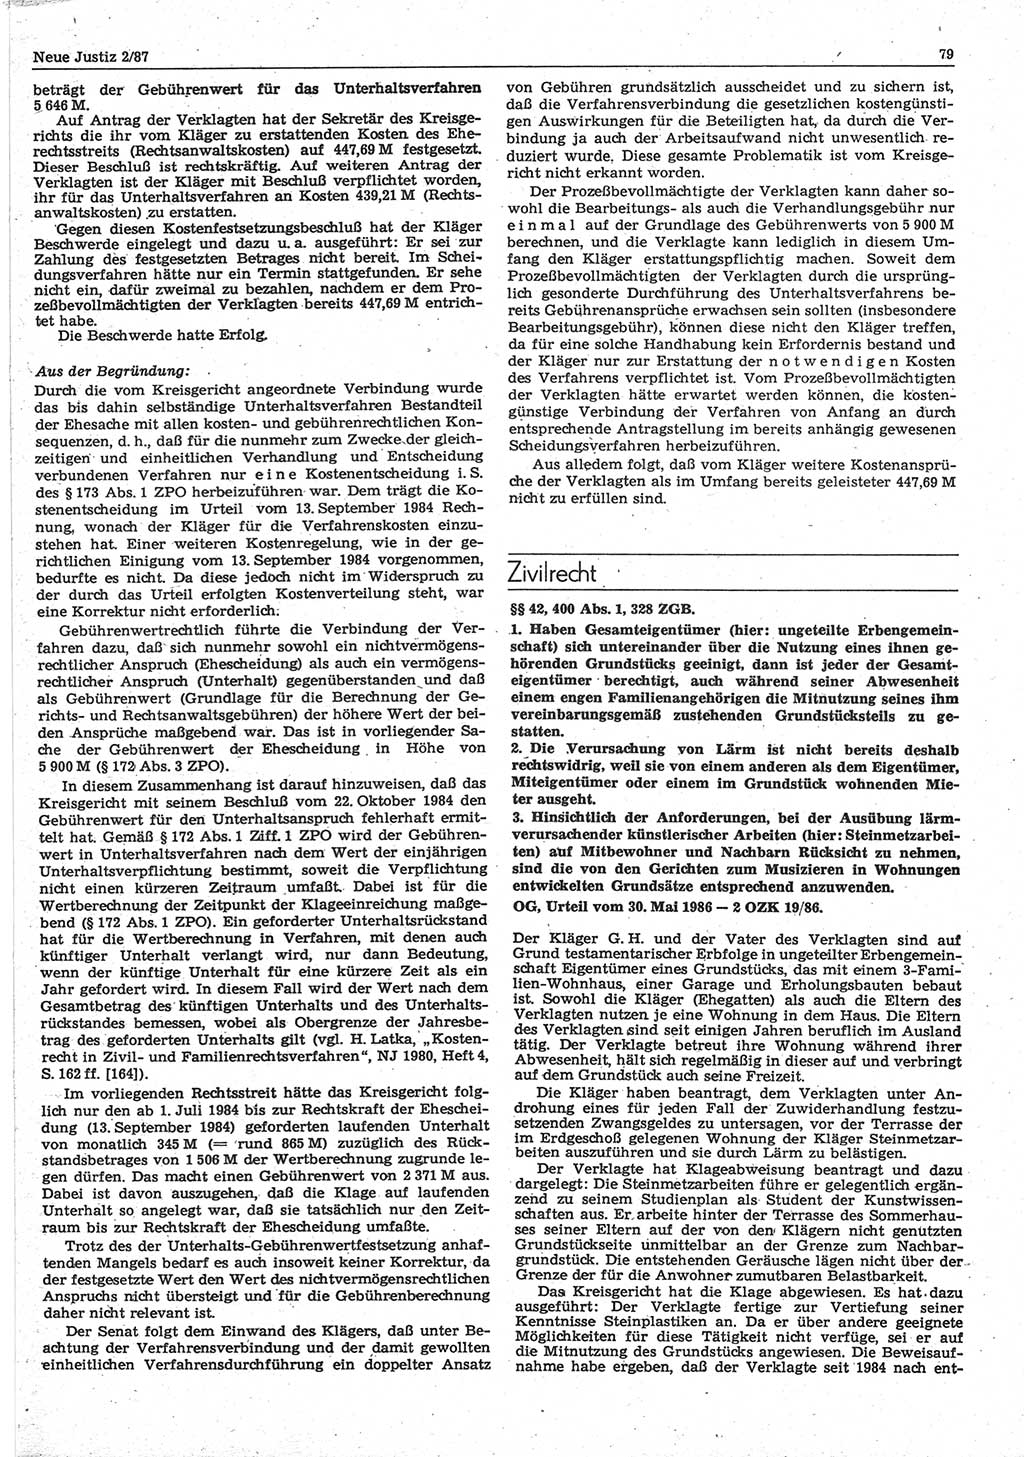 Neue Justiz (NJ), Zeitschrift für sozialistisches Recht und Gesetzlichkeit [Deutsche Demokratische Republik (DDR)], 41. Jahrgang 1987, Seite 79 (NJ DDR 1987, S. 79)